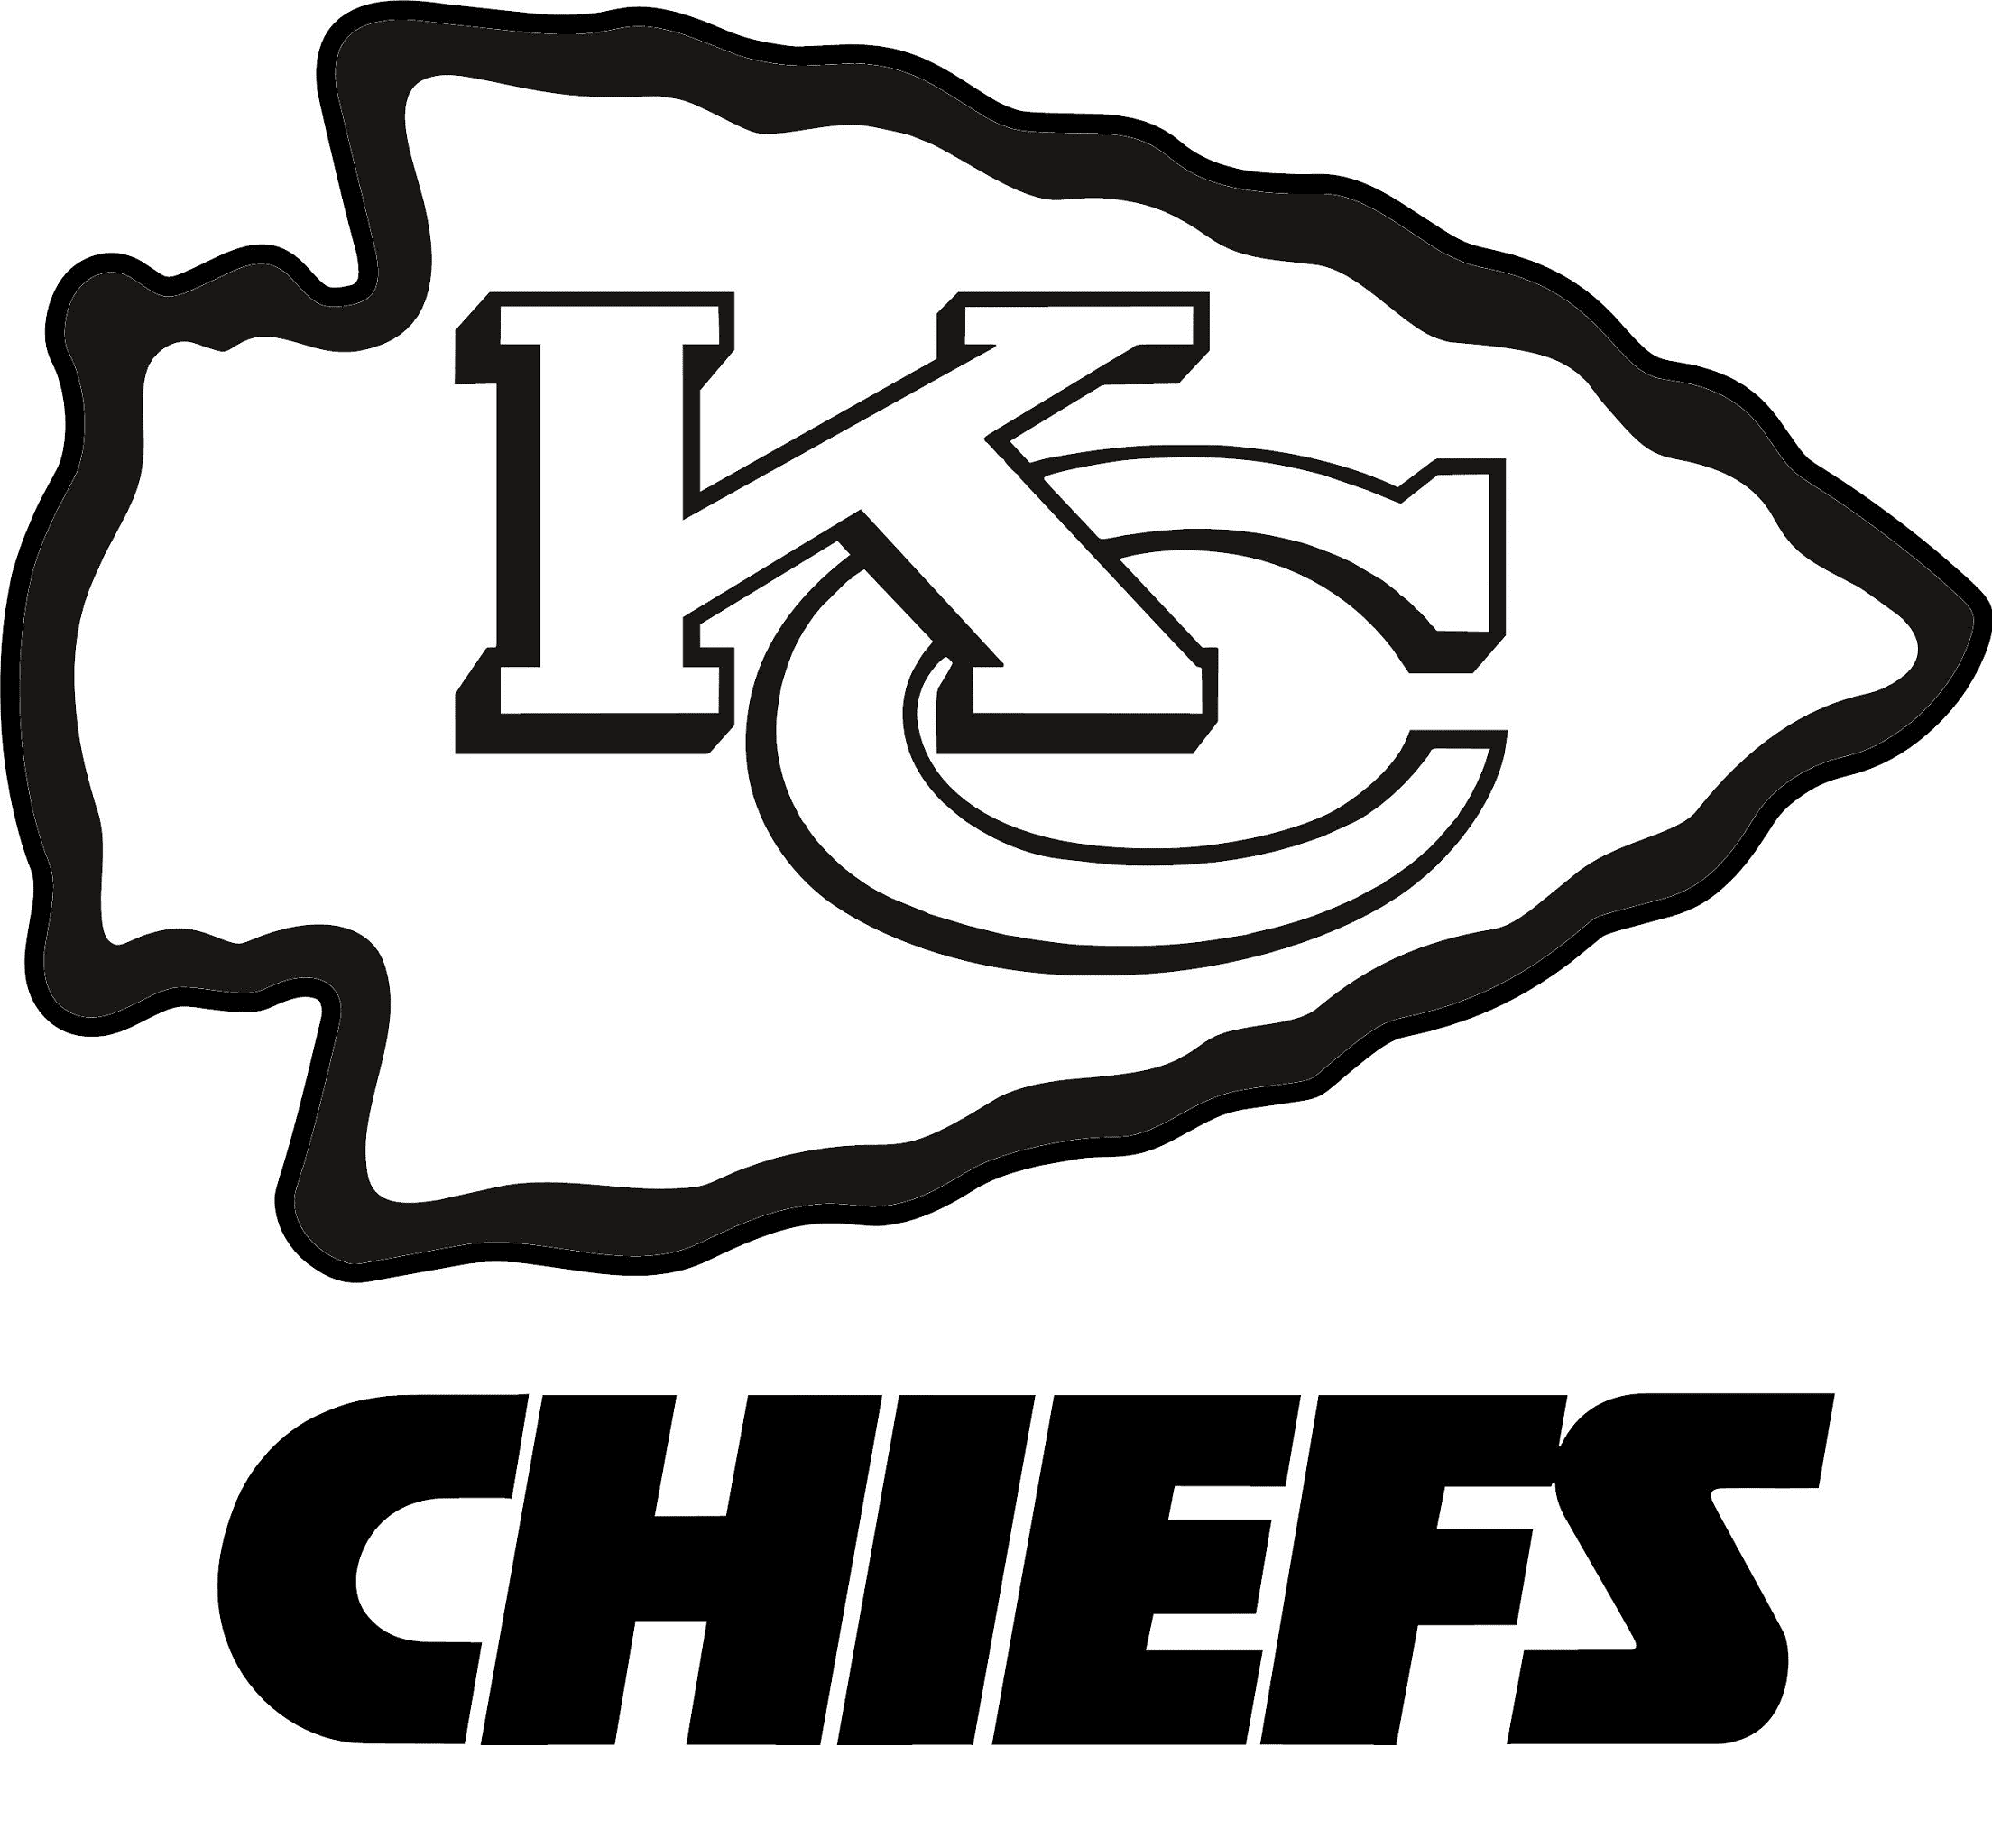 堪萨斯城酋长队的 Kc Chiefs 徽标